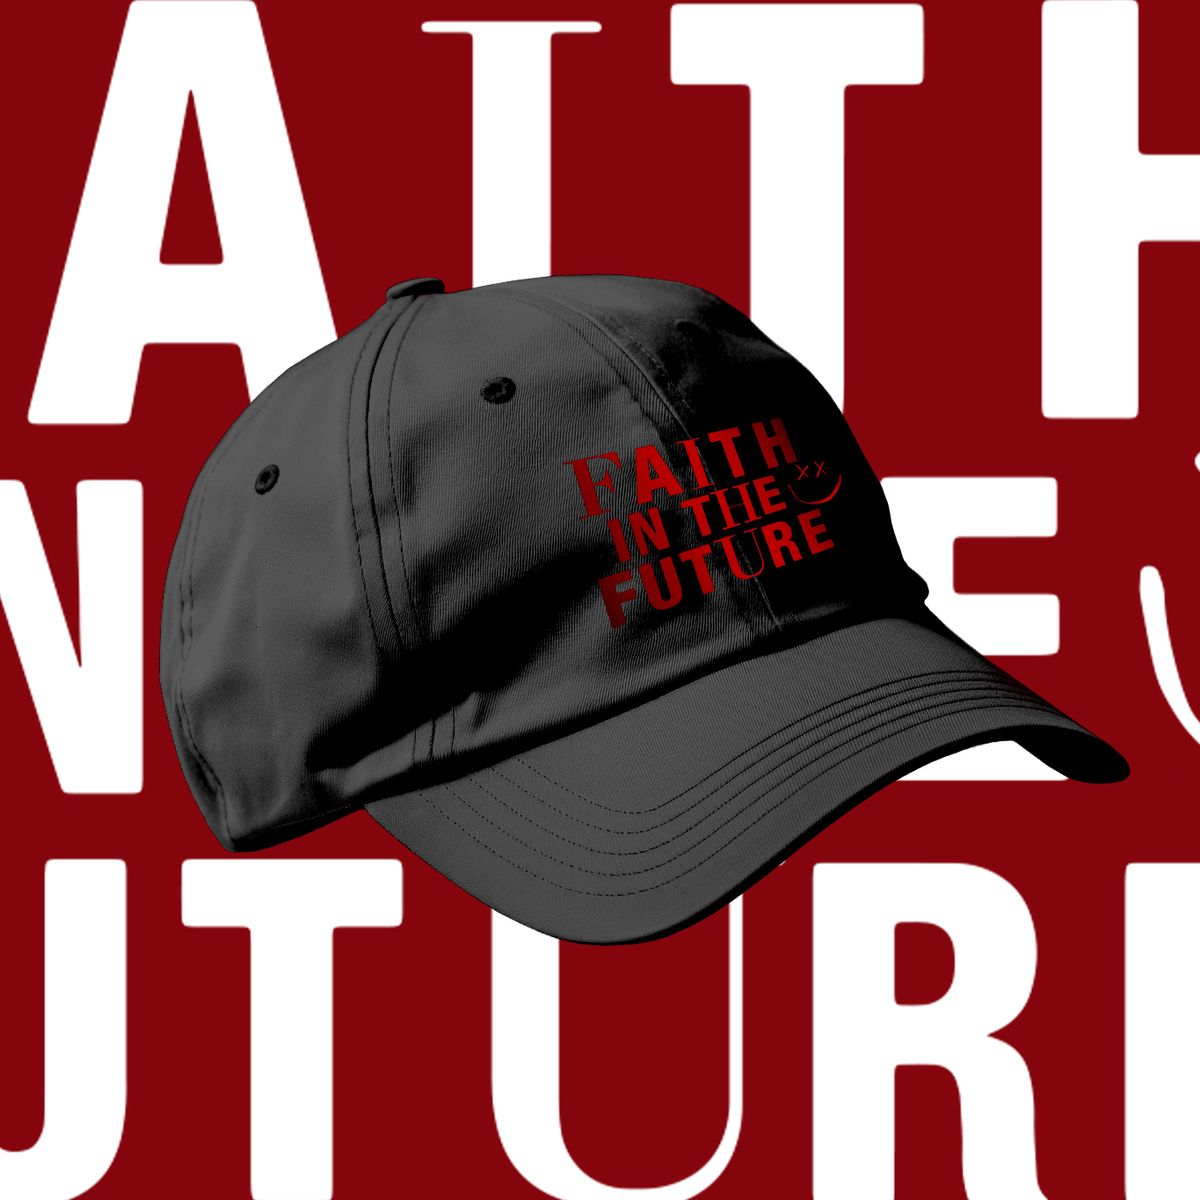 Nome do produto: Louis Tomlinson - Faith in the future